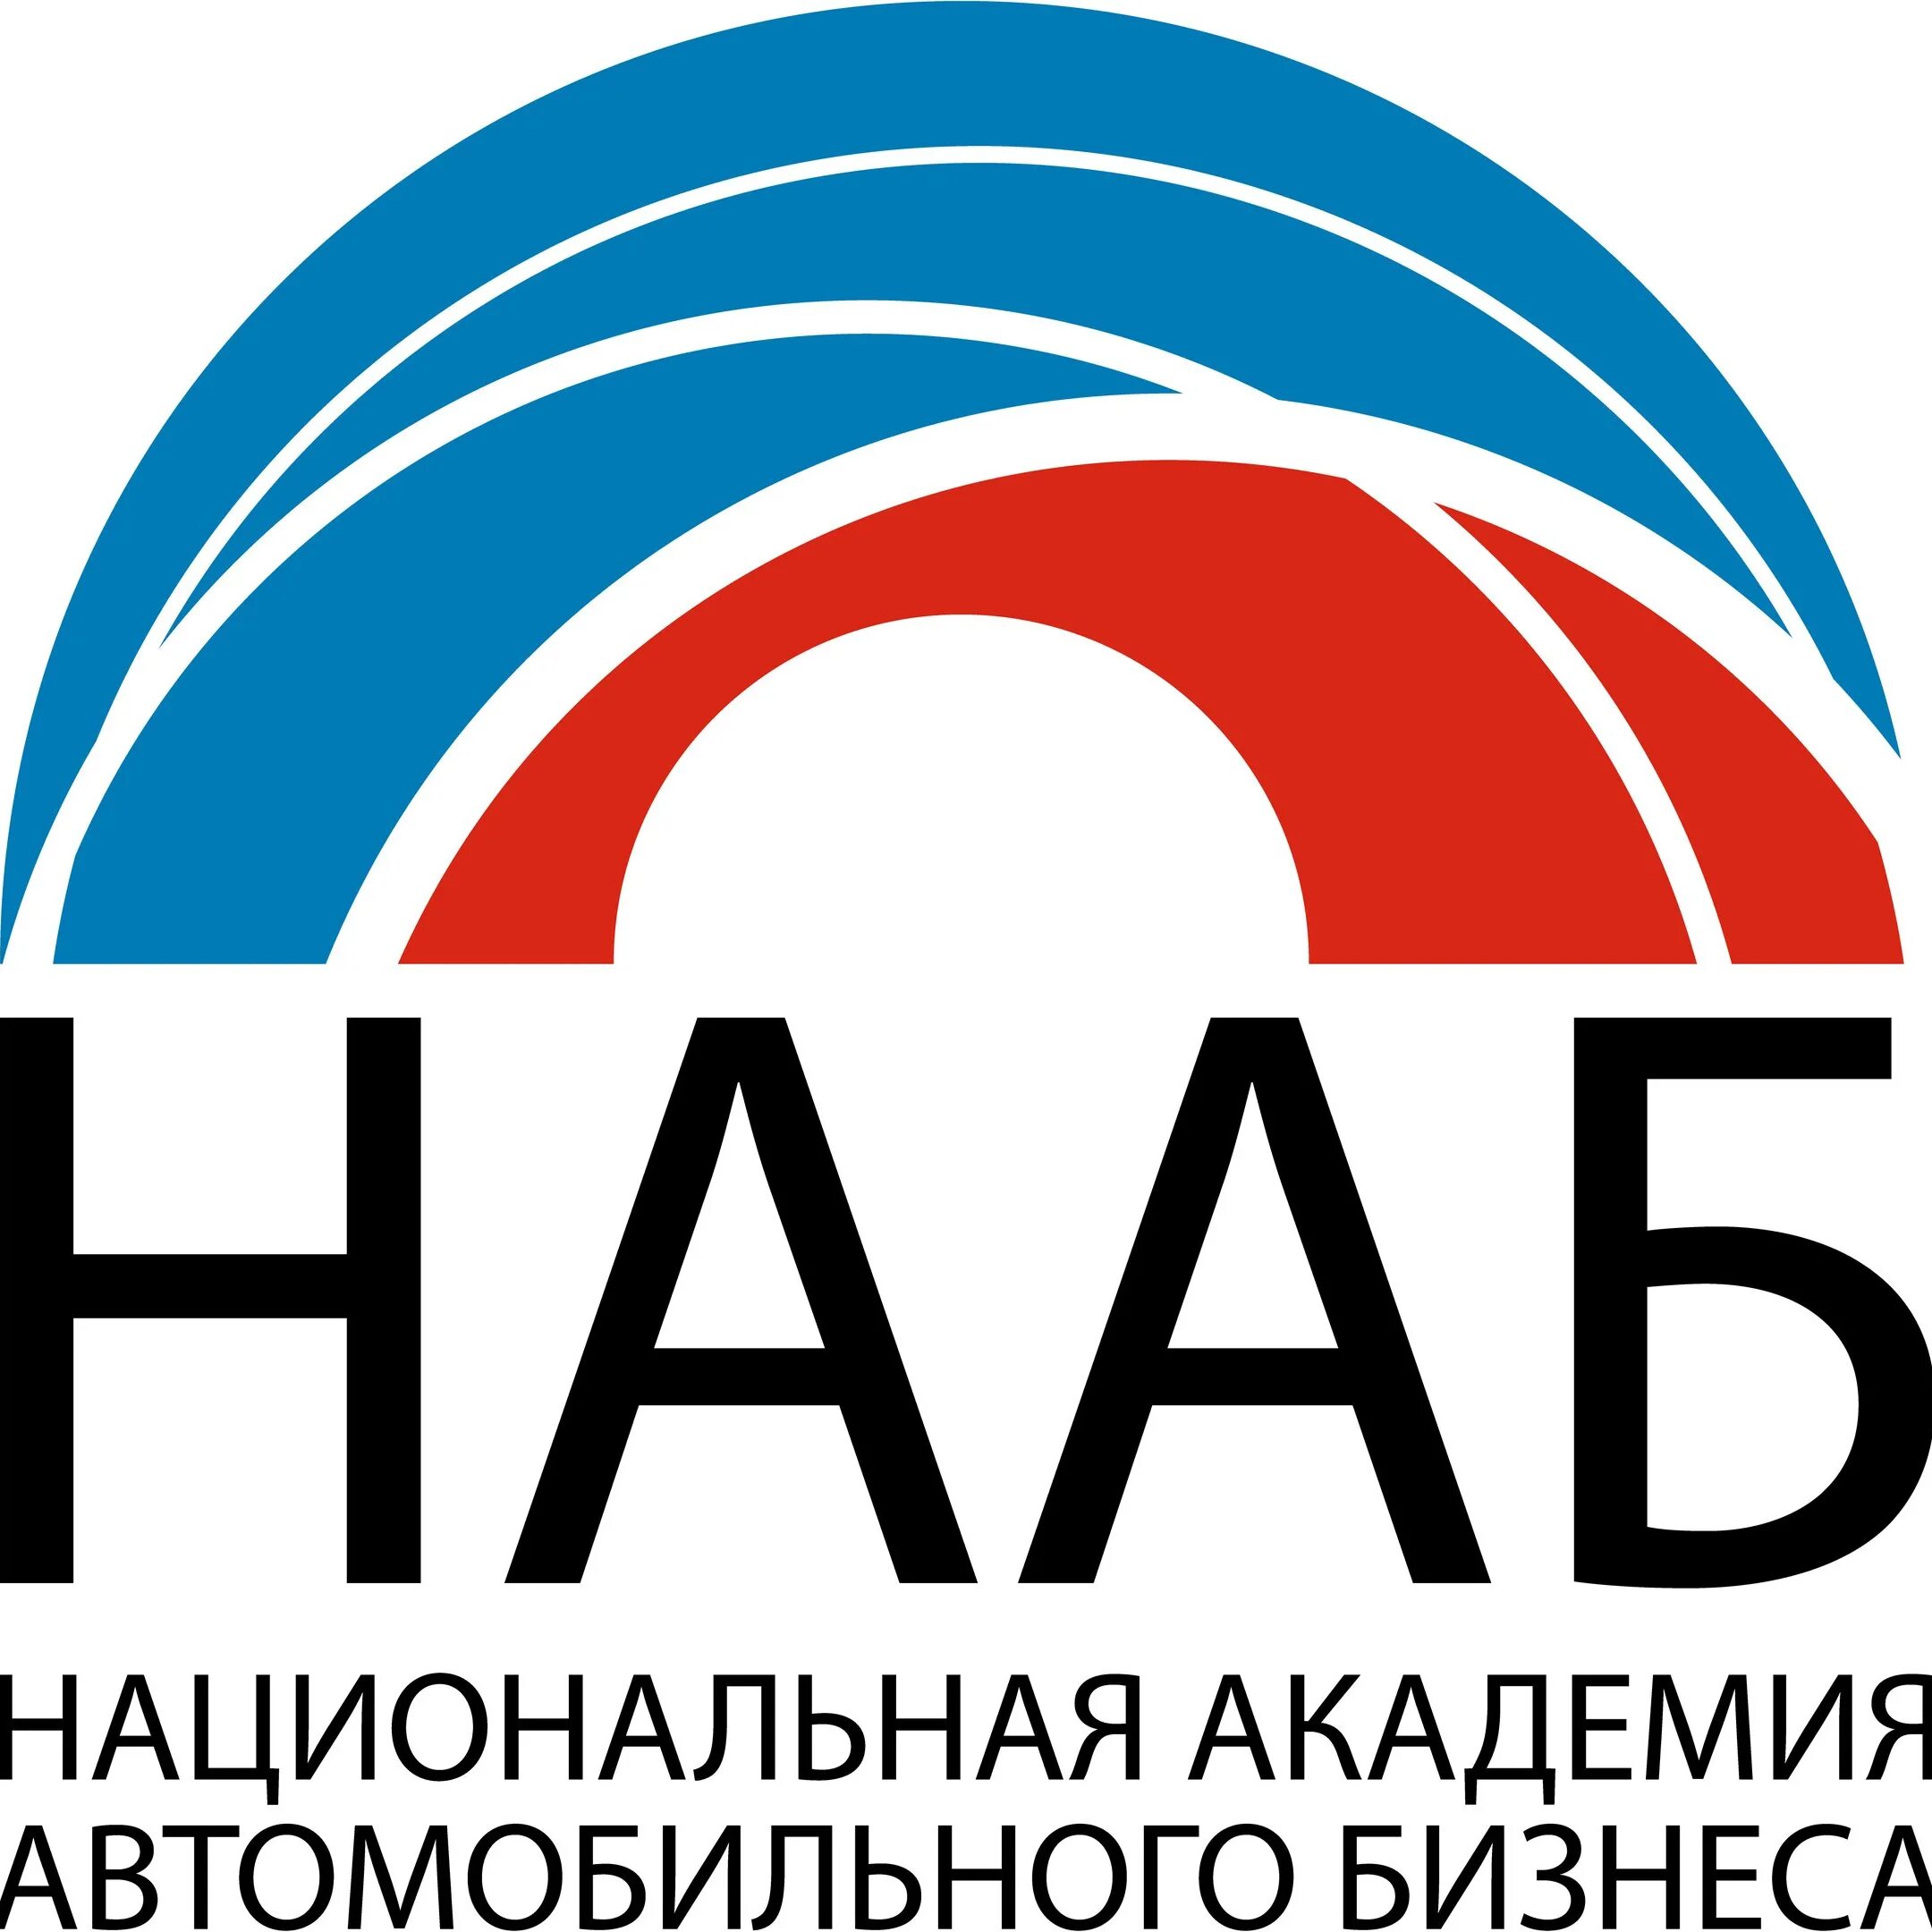 Нан ра. Национальная Академия управления и производства логотип.